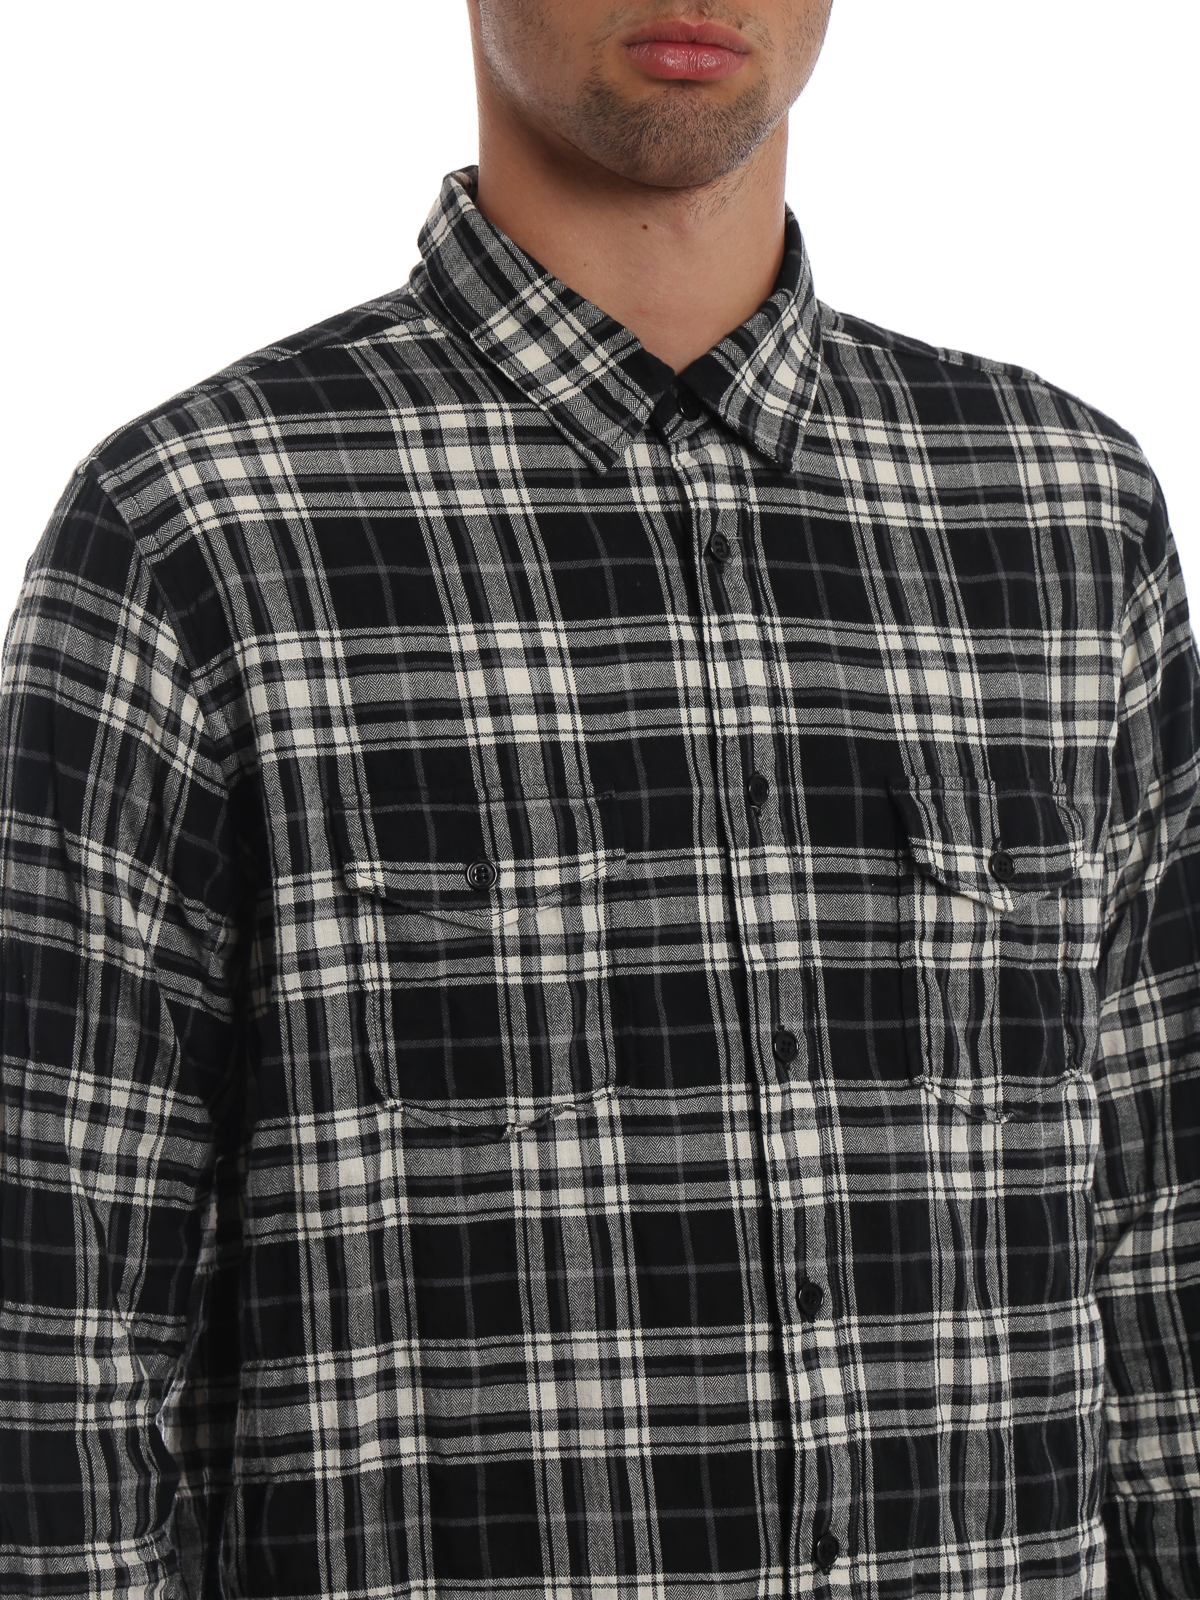 Shirts Saint Laurent - Crumpled effect check cotton shirt - 529373Y765T1041